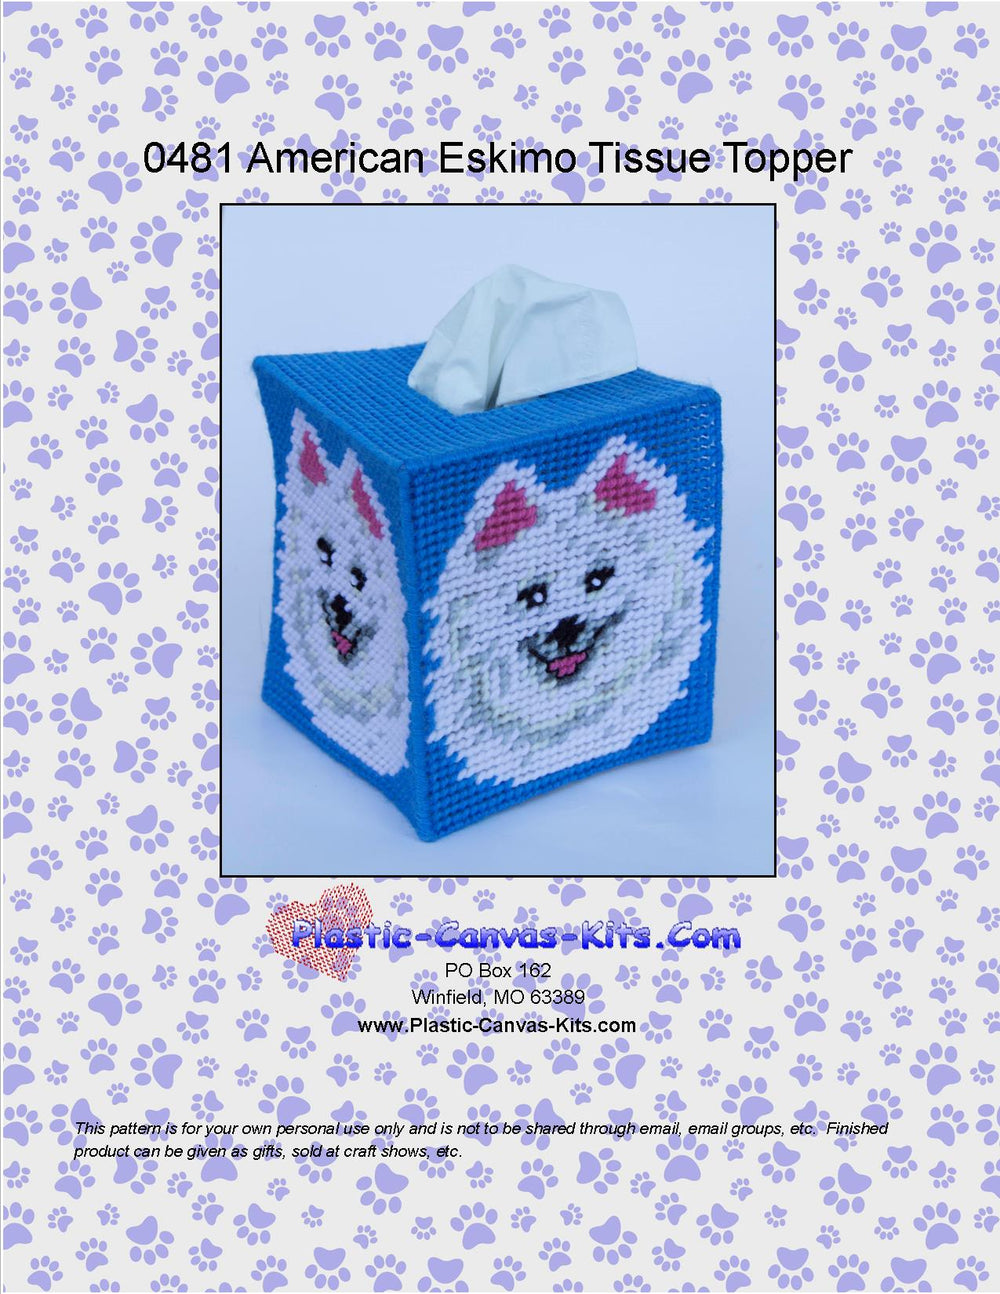 American Eskimo Dog Tissue Topper